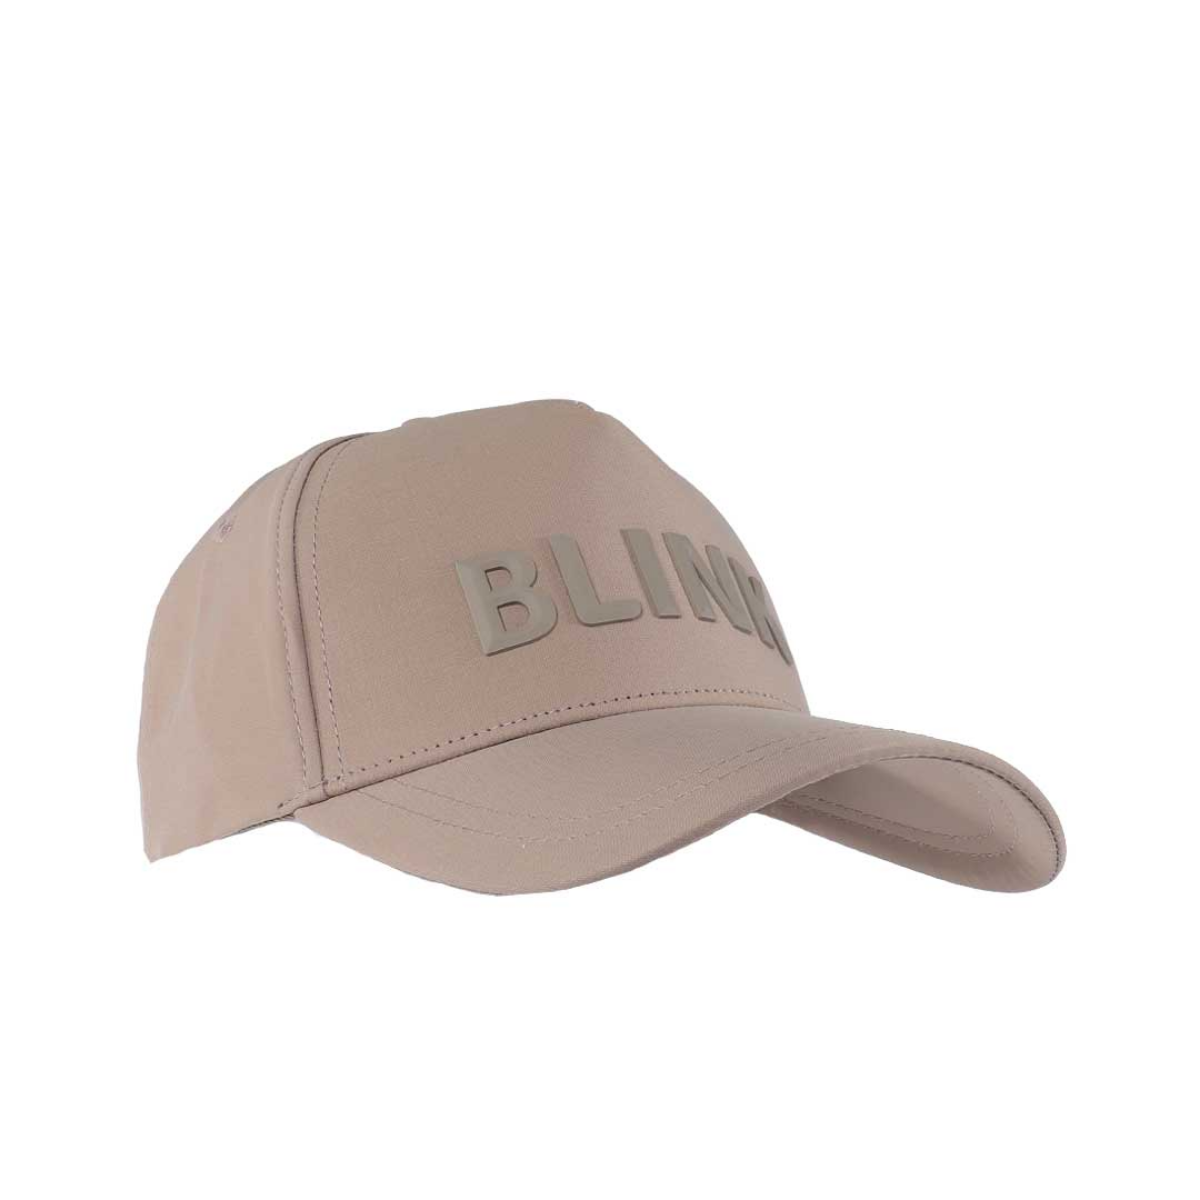 BLINK BOLD LOGO PEAK CAP